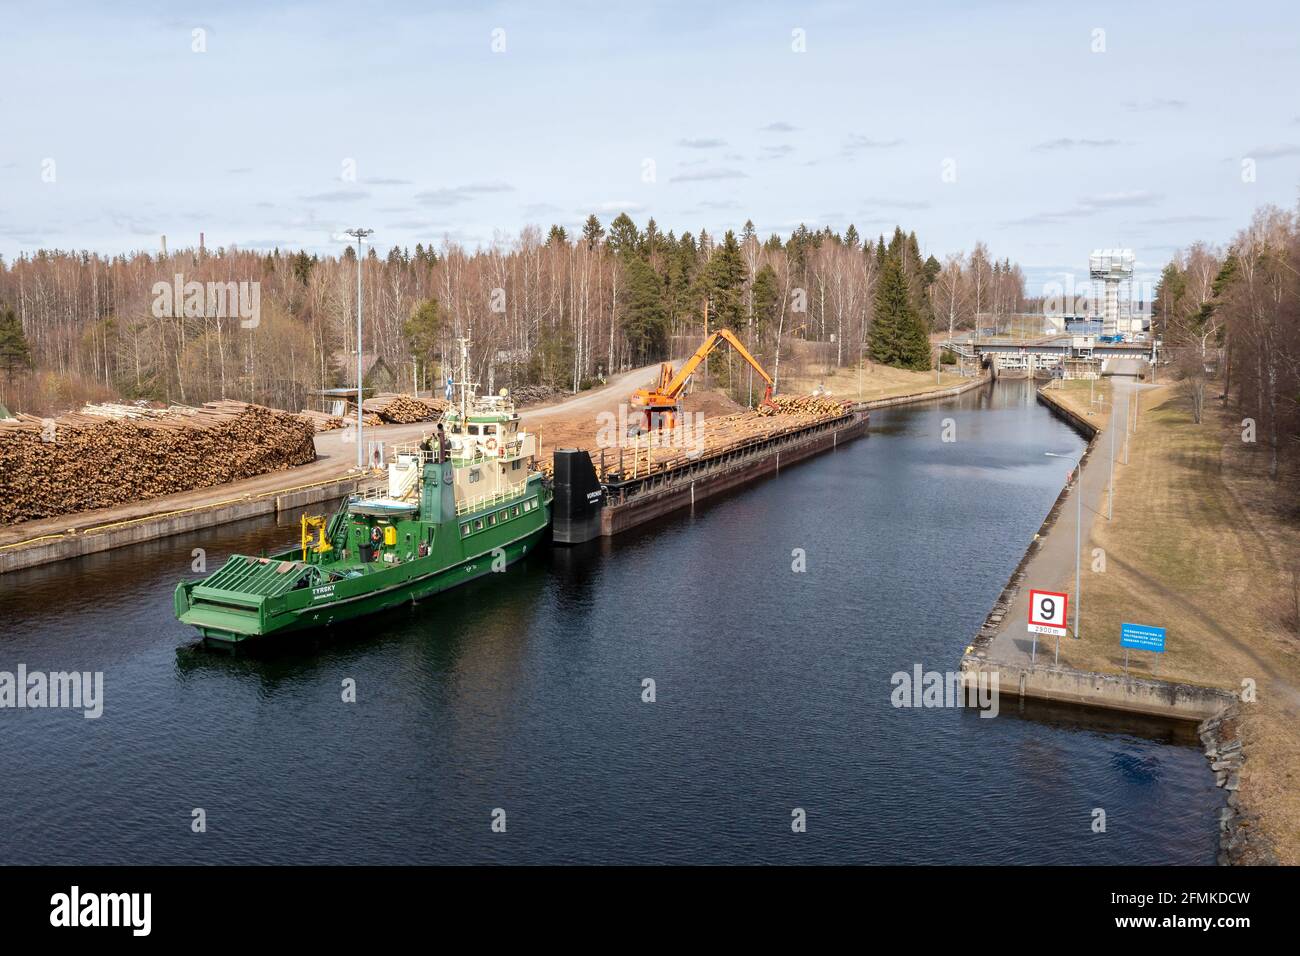 Im Ladebereich des Kanals in Varkaus, einer Stadt der Holzindustrie, wird eine Holzladung auf die Schubkahn verladen. Stockfoto